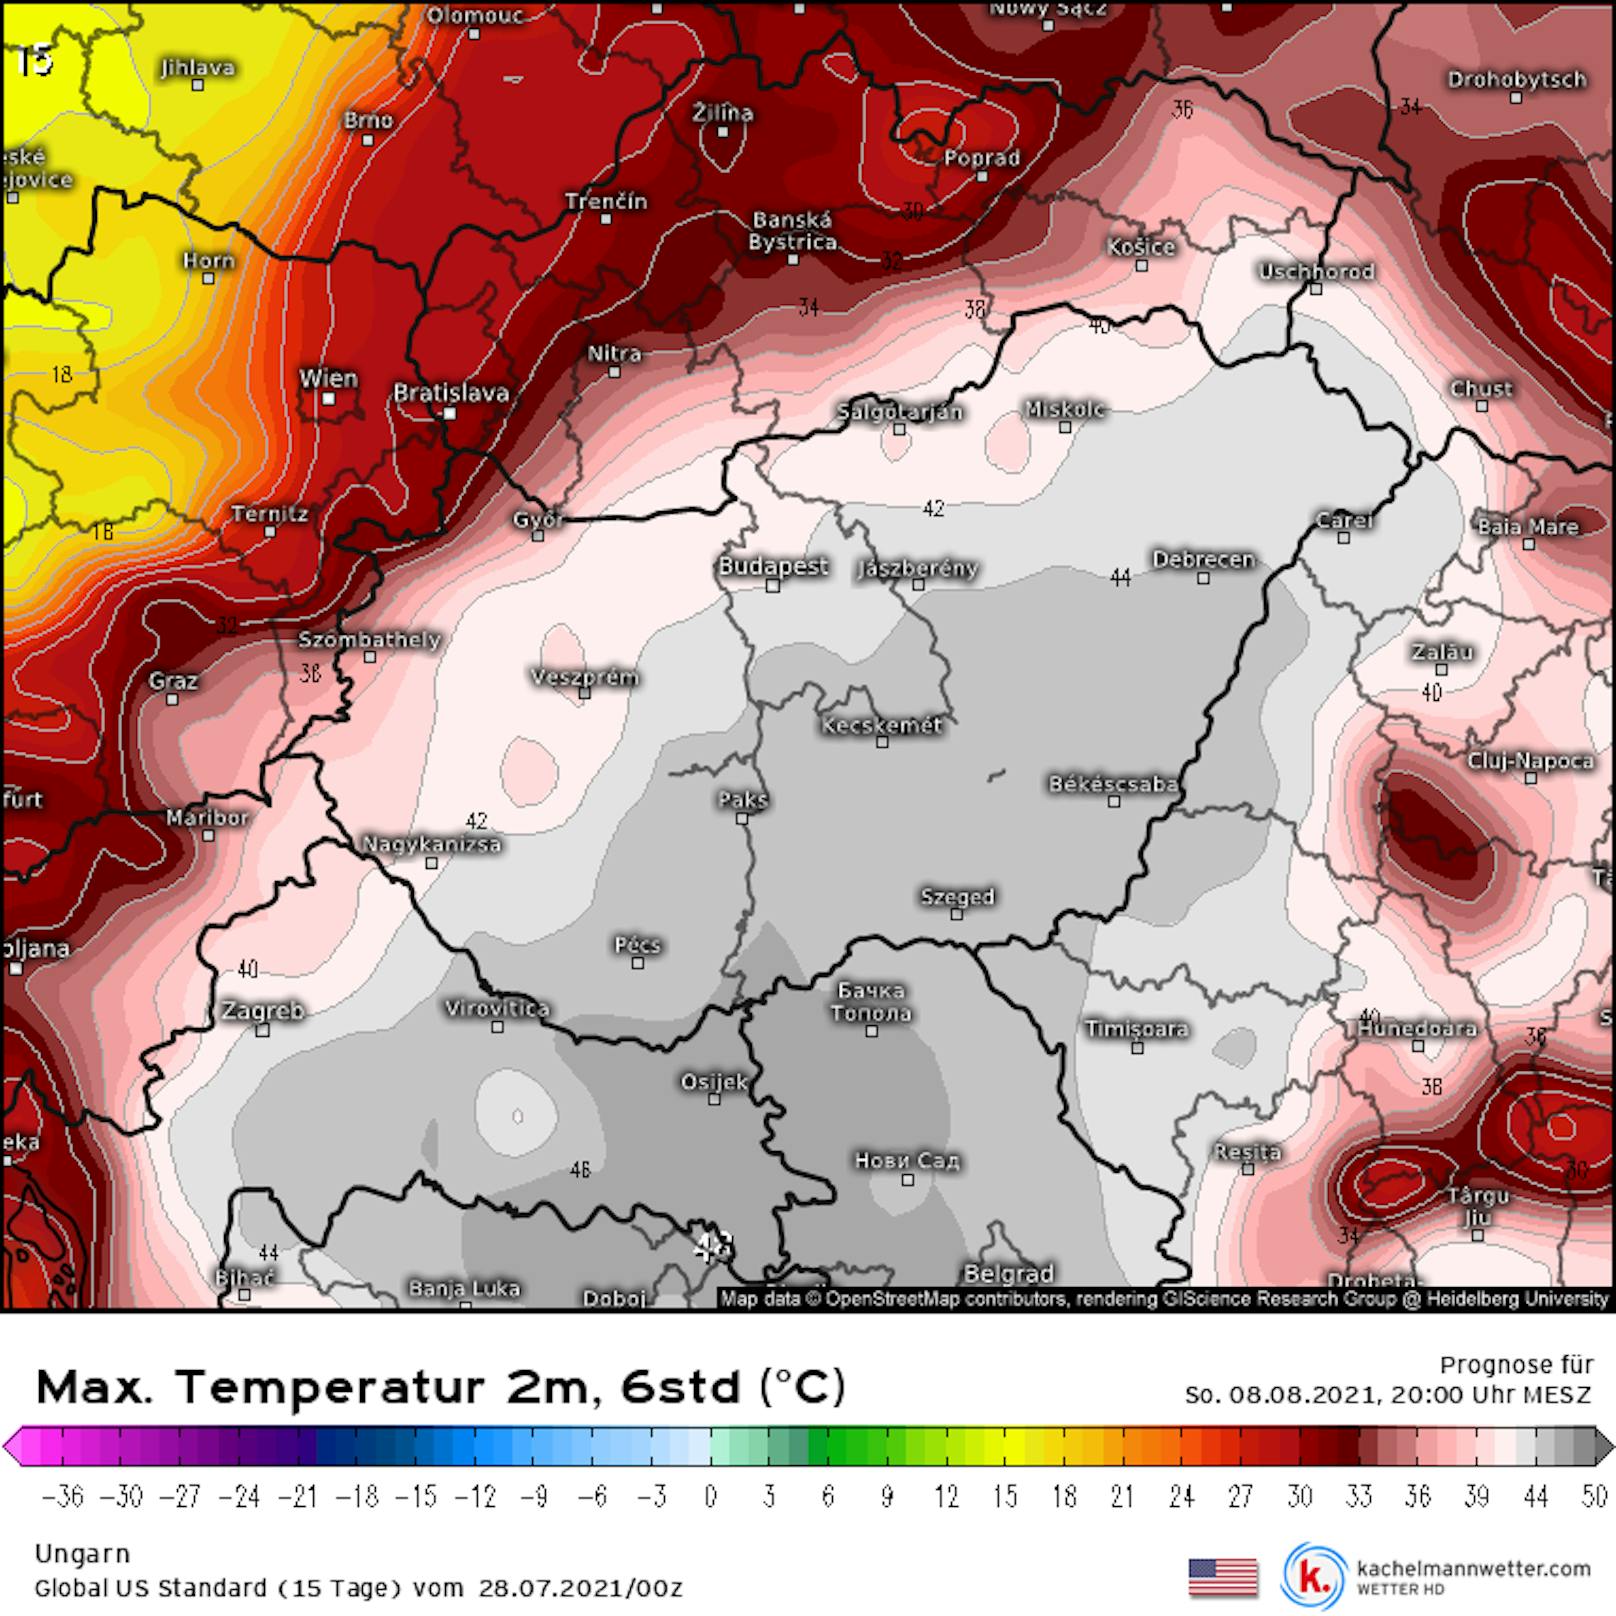 Die Hitzezone erstreckt sich auch in die ungarische Tiefebene. Bis Budapest ist mit Temperaturen jenseits der 40 Grad zu rechnen.